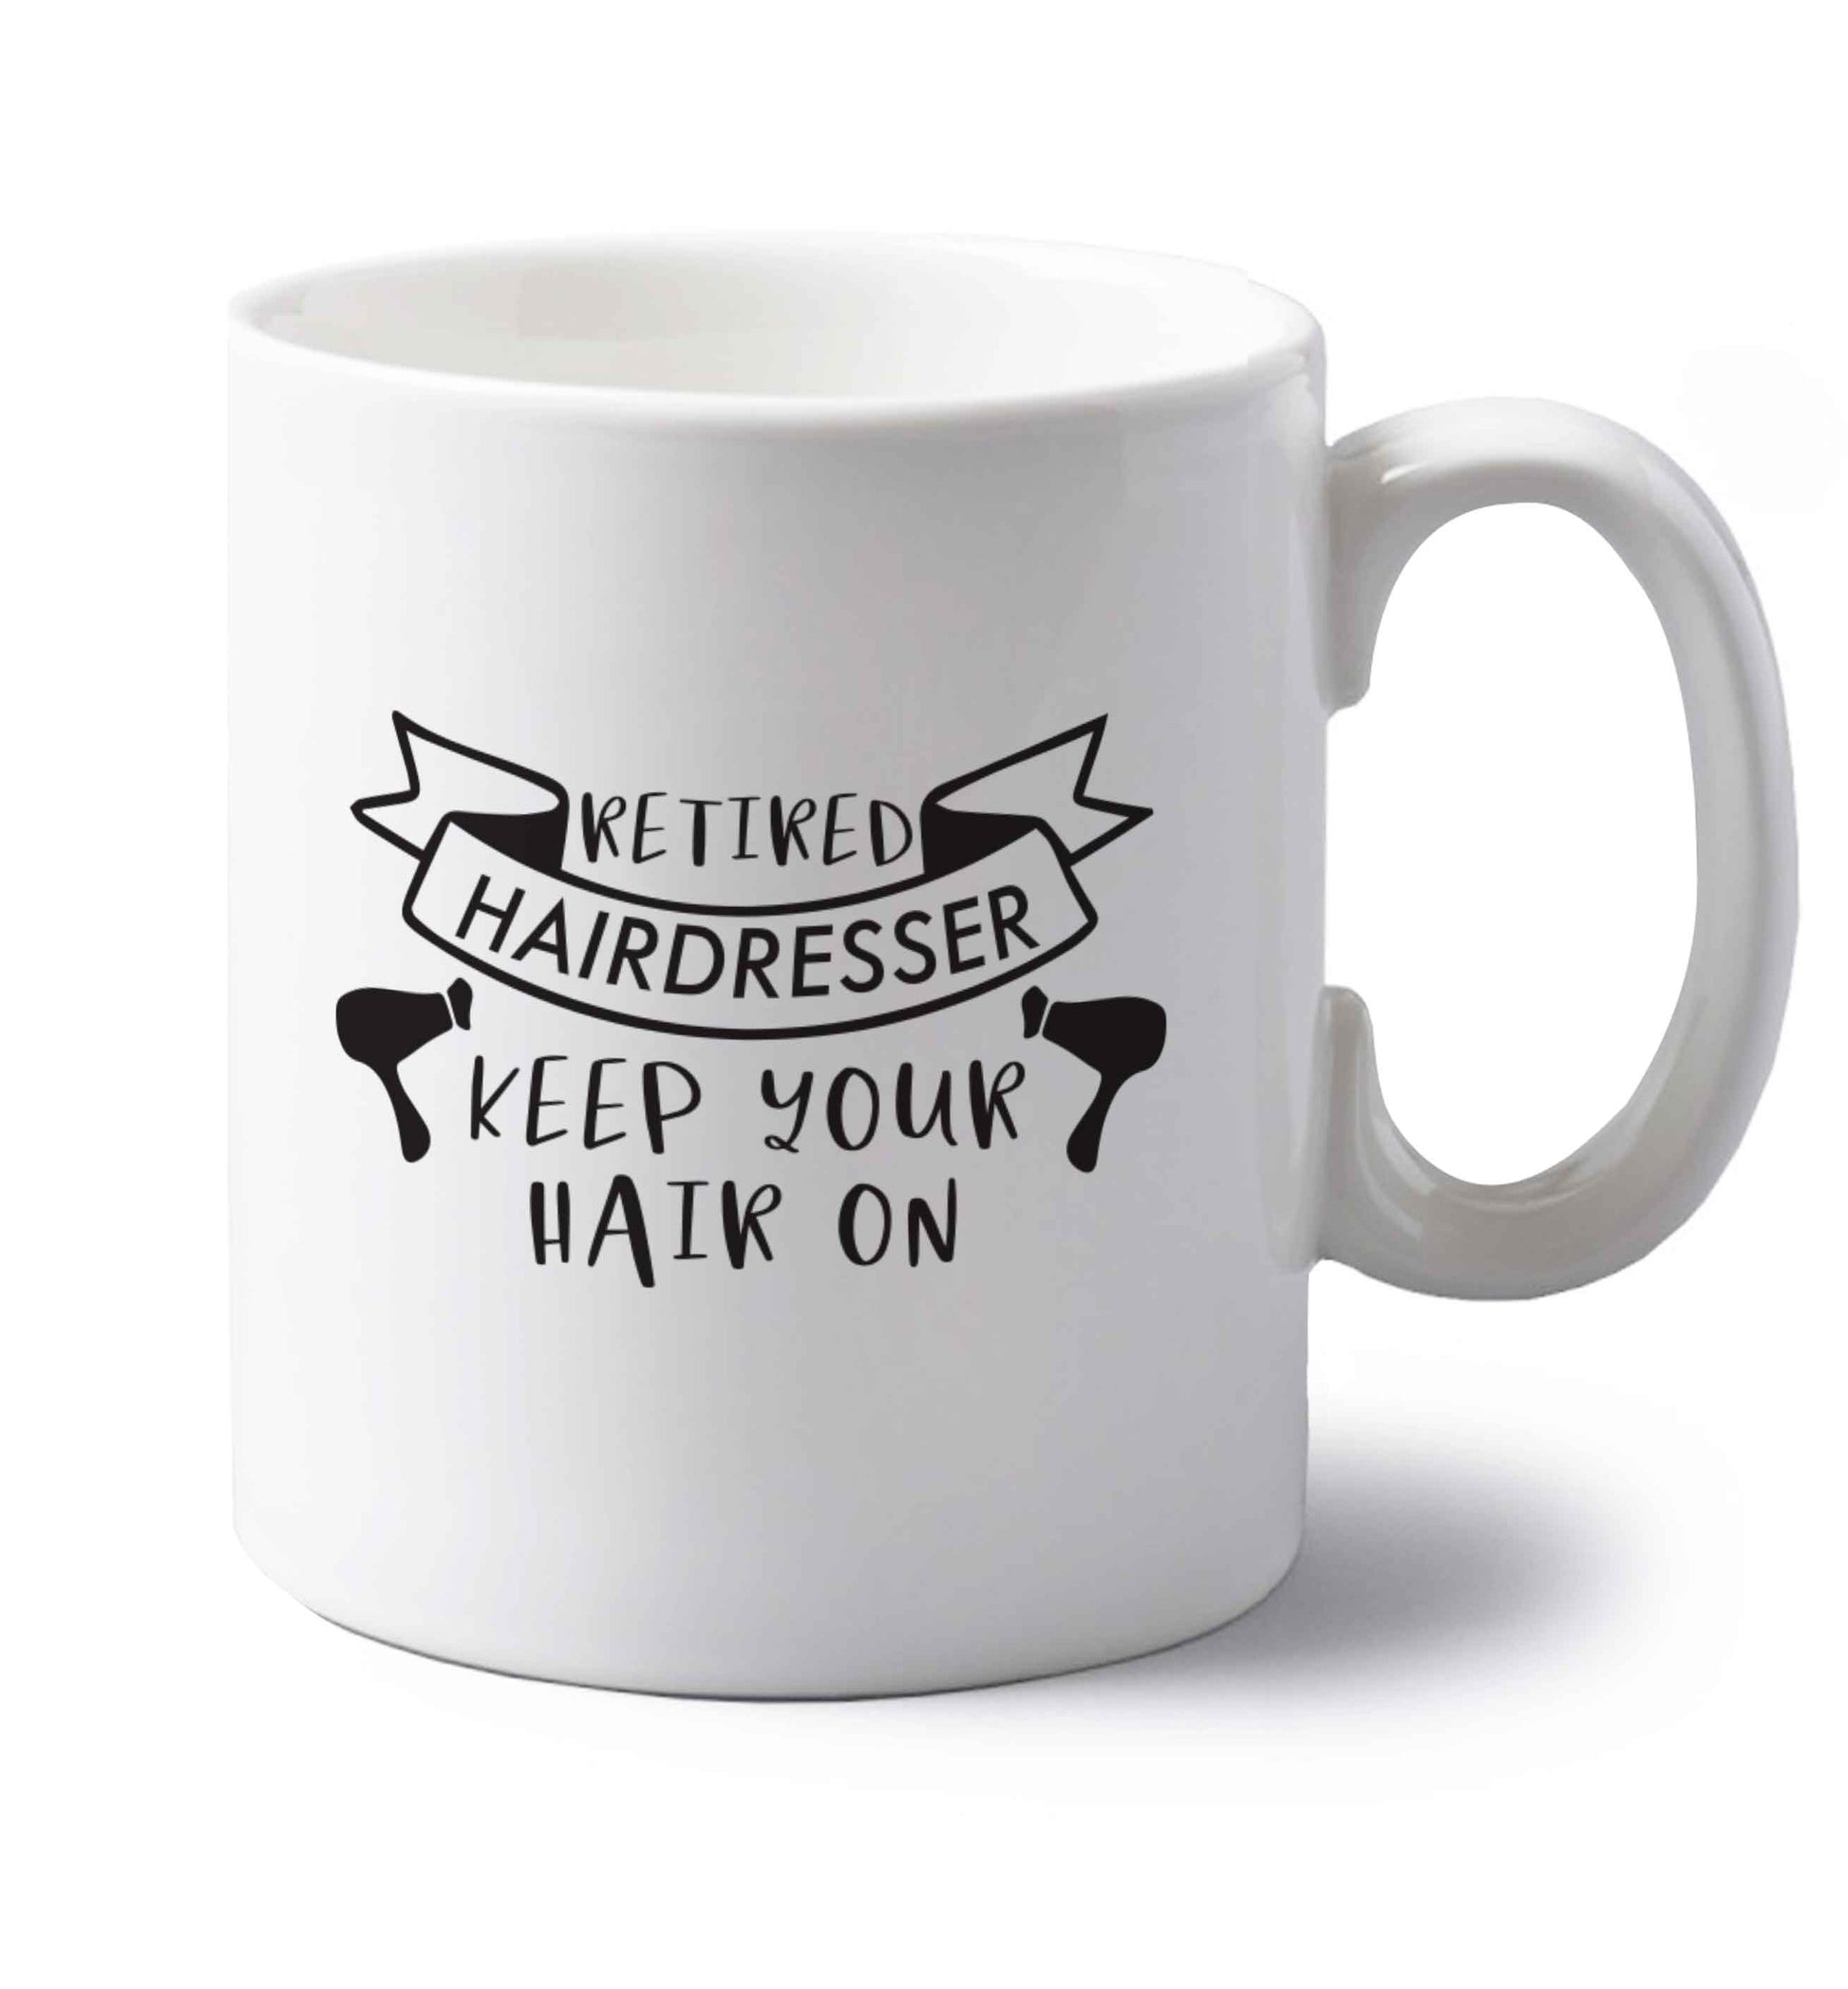 Retired hairdresser keep your hair on left handed white ceramic mug 